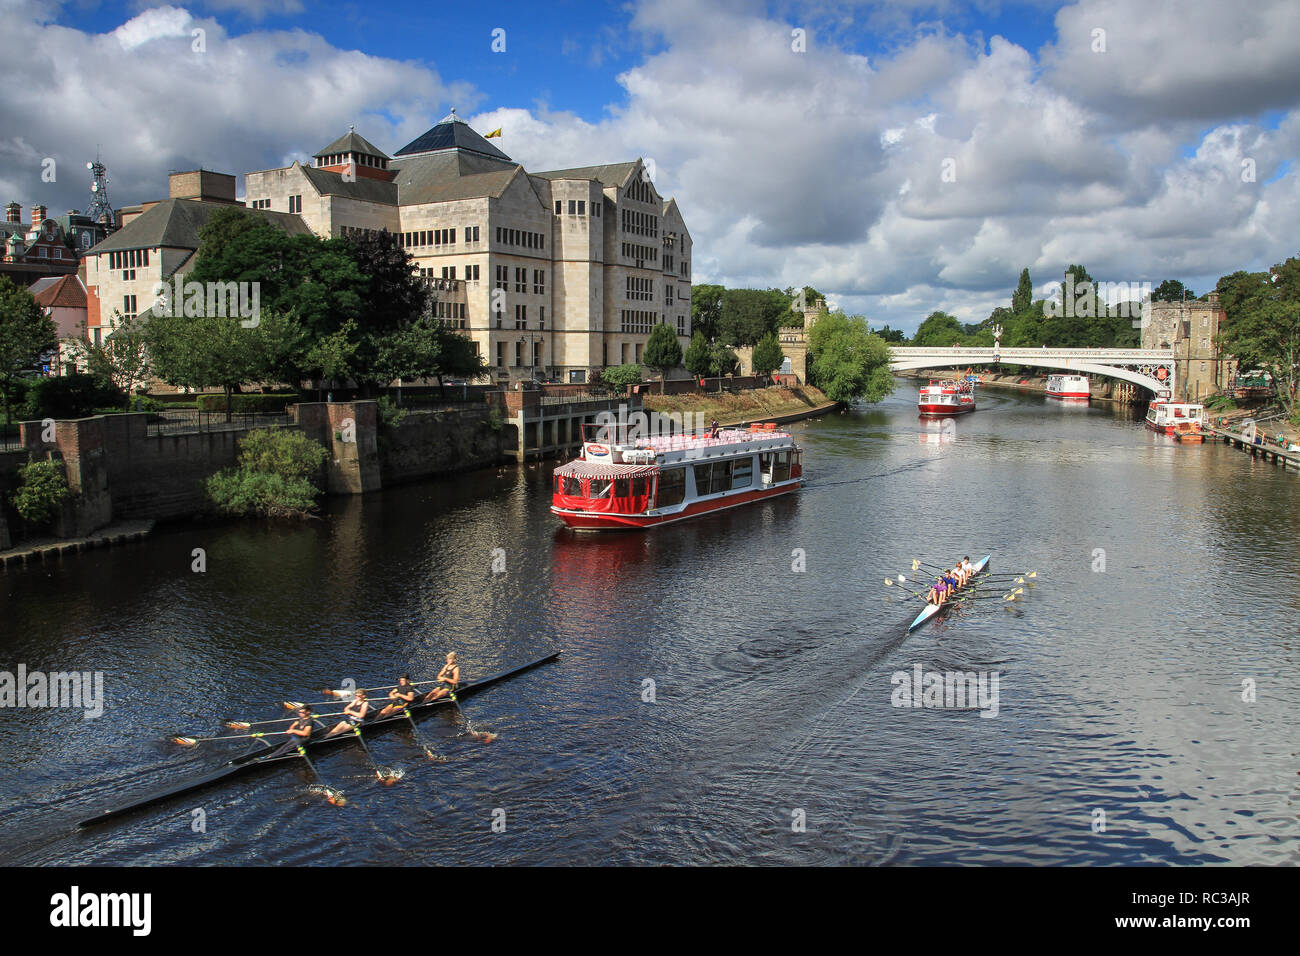 YORK, UK - 2 septembre, 2015. Une croisière voile et aviron club bateaux naviguant le long de la rivière Ouse, au centre de la ville historique de York, Royaume-Uni Banque D'Images